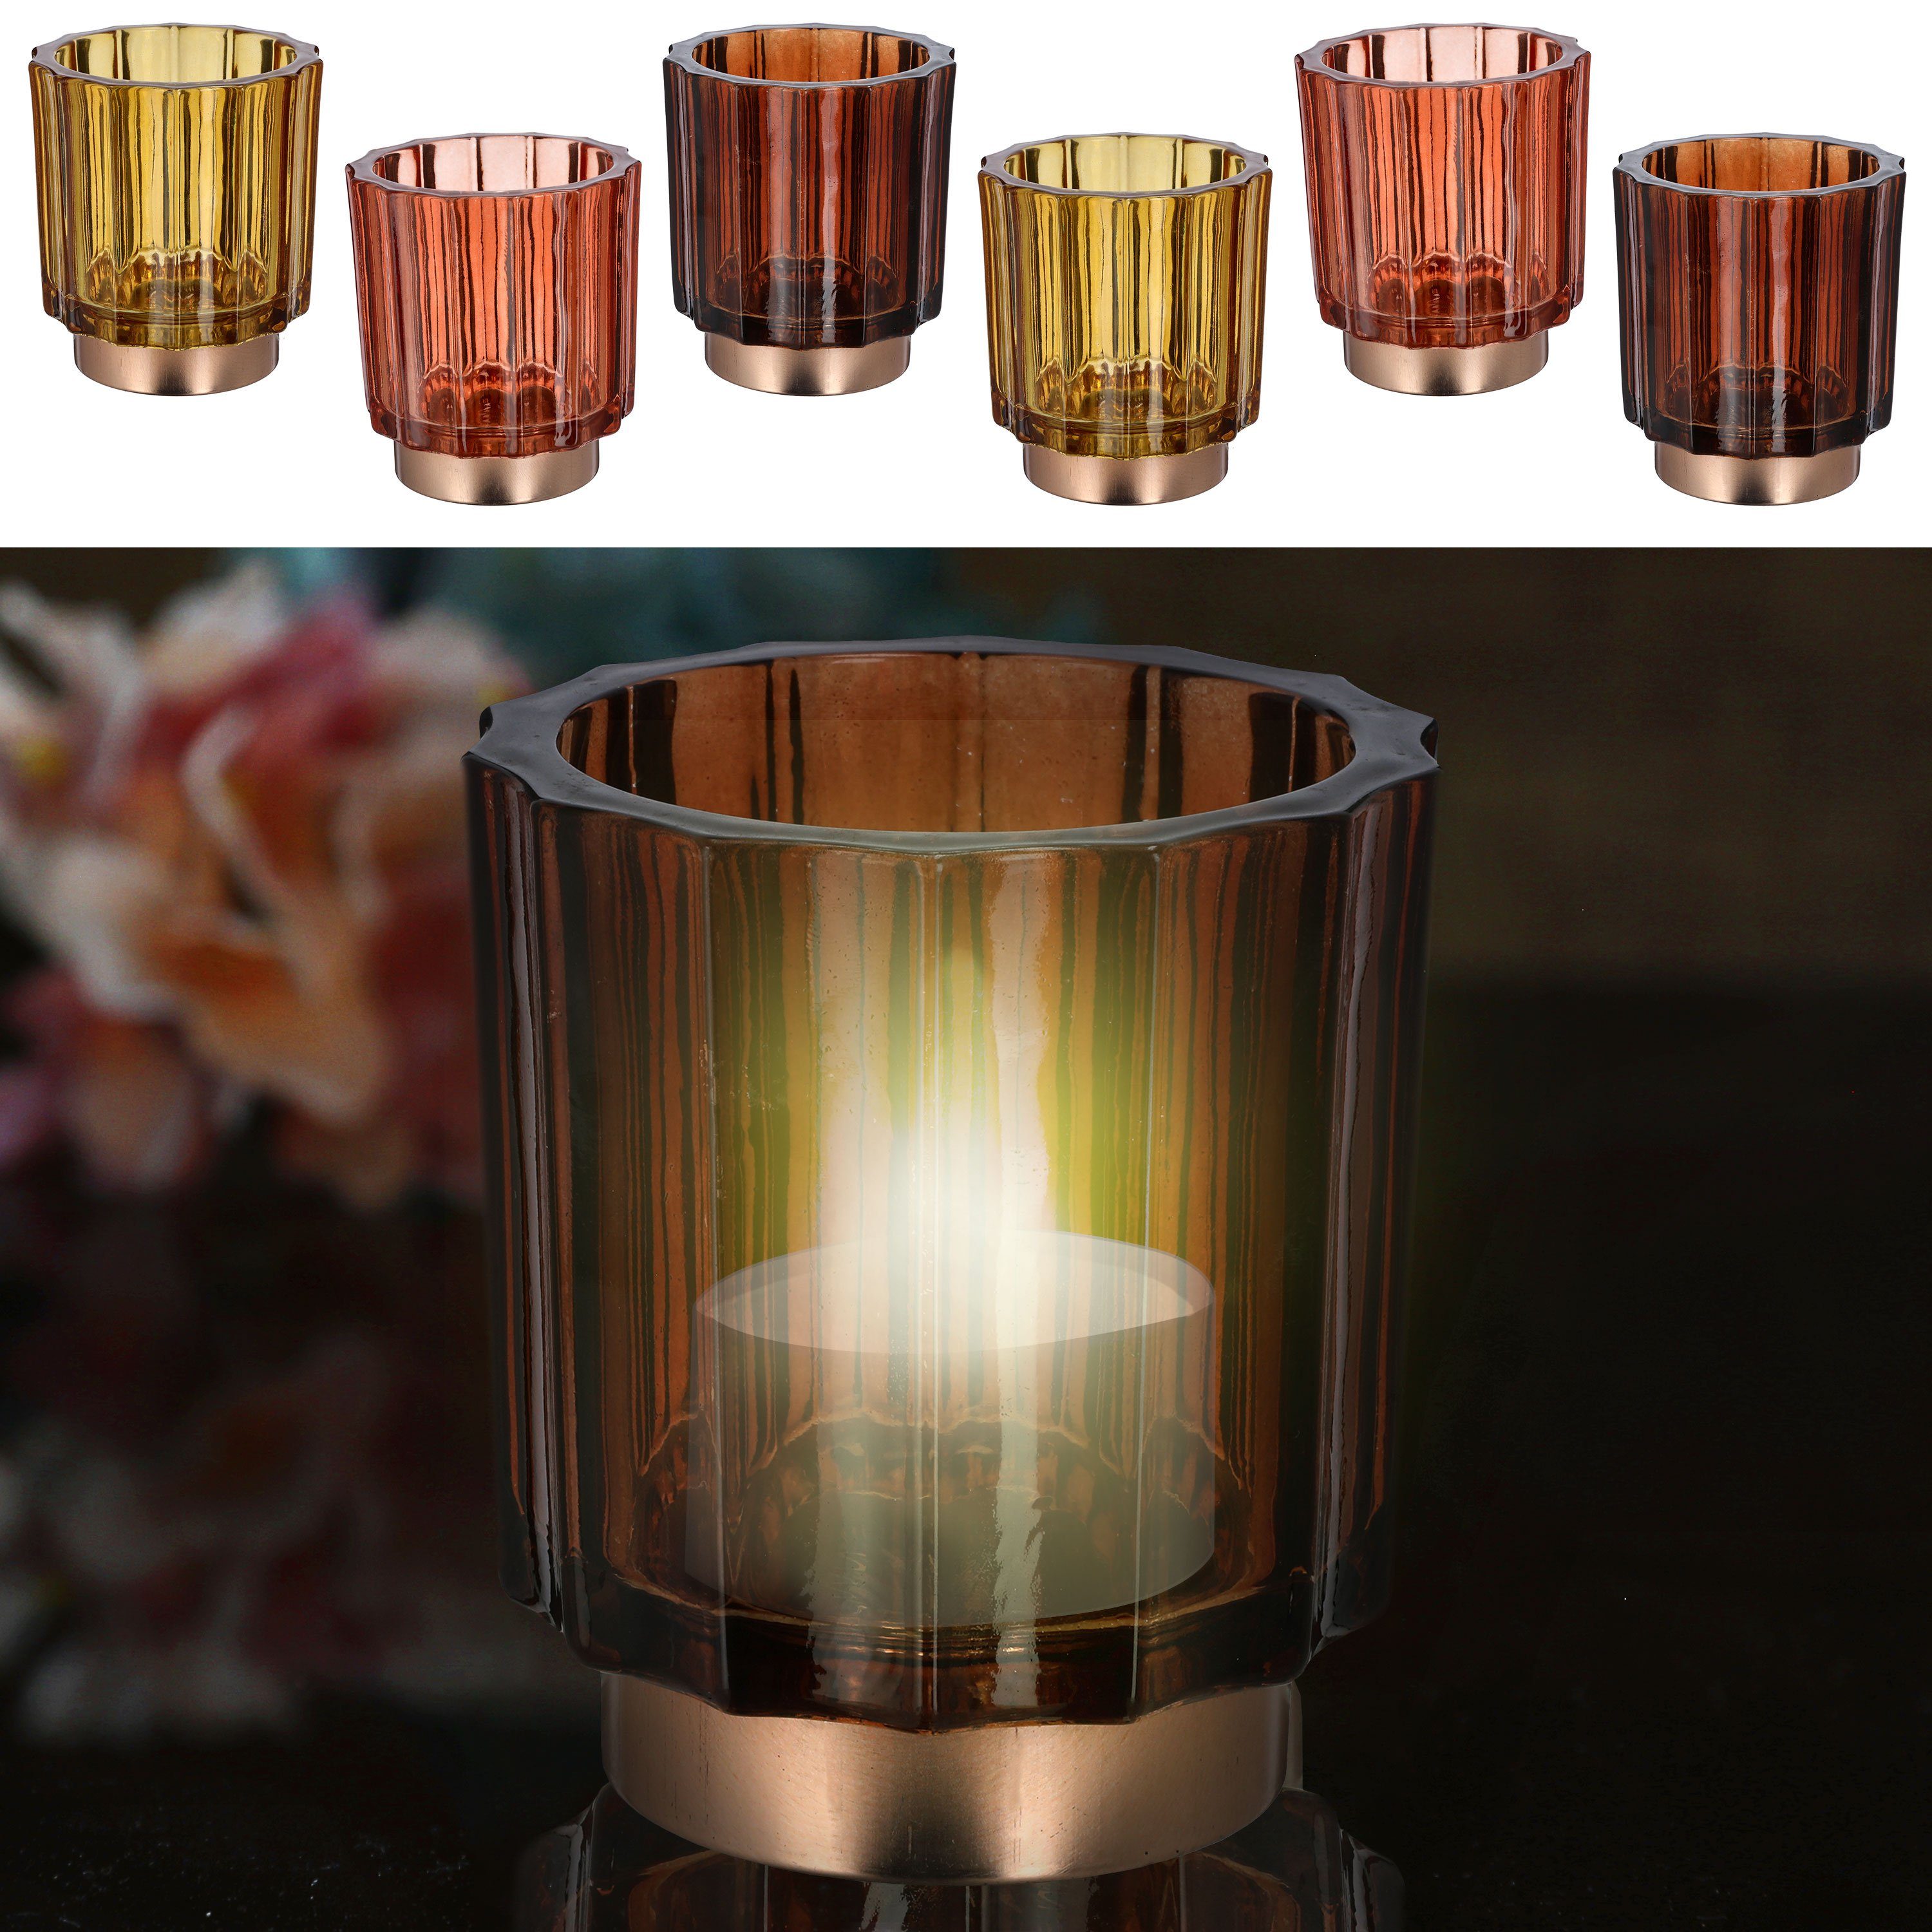 CEPEWA Teelichthalter Windlicht 3er Set 9,2x10cm 3 Farben Glas Sockel